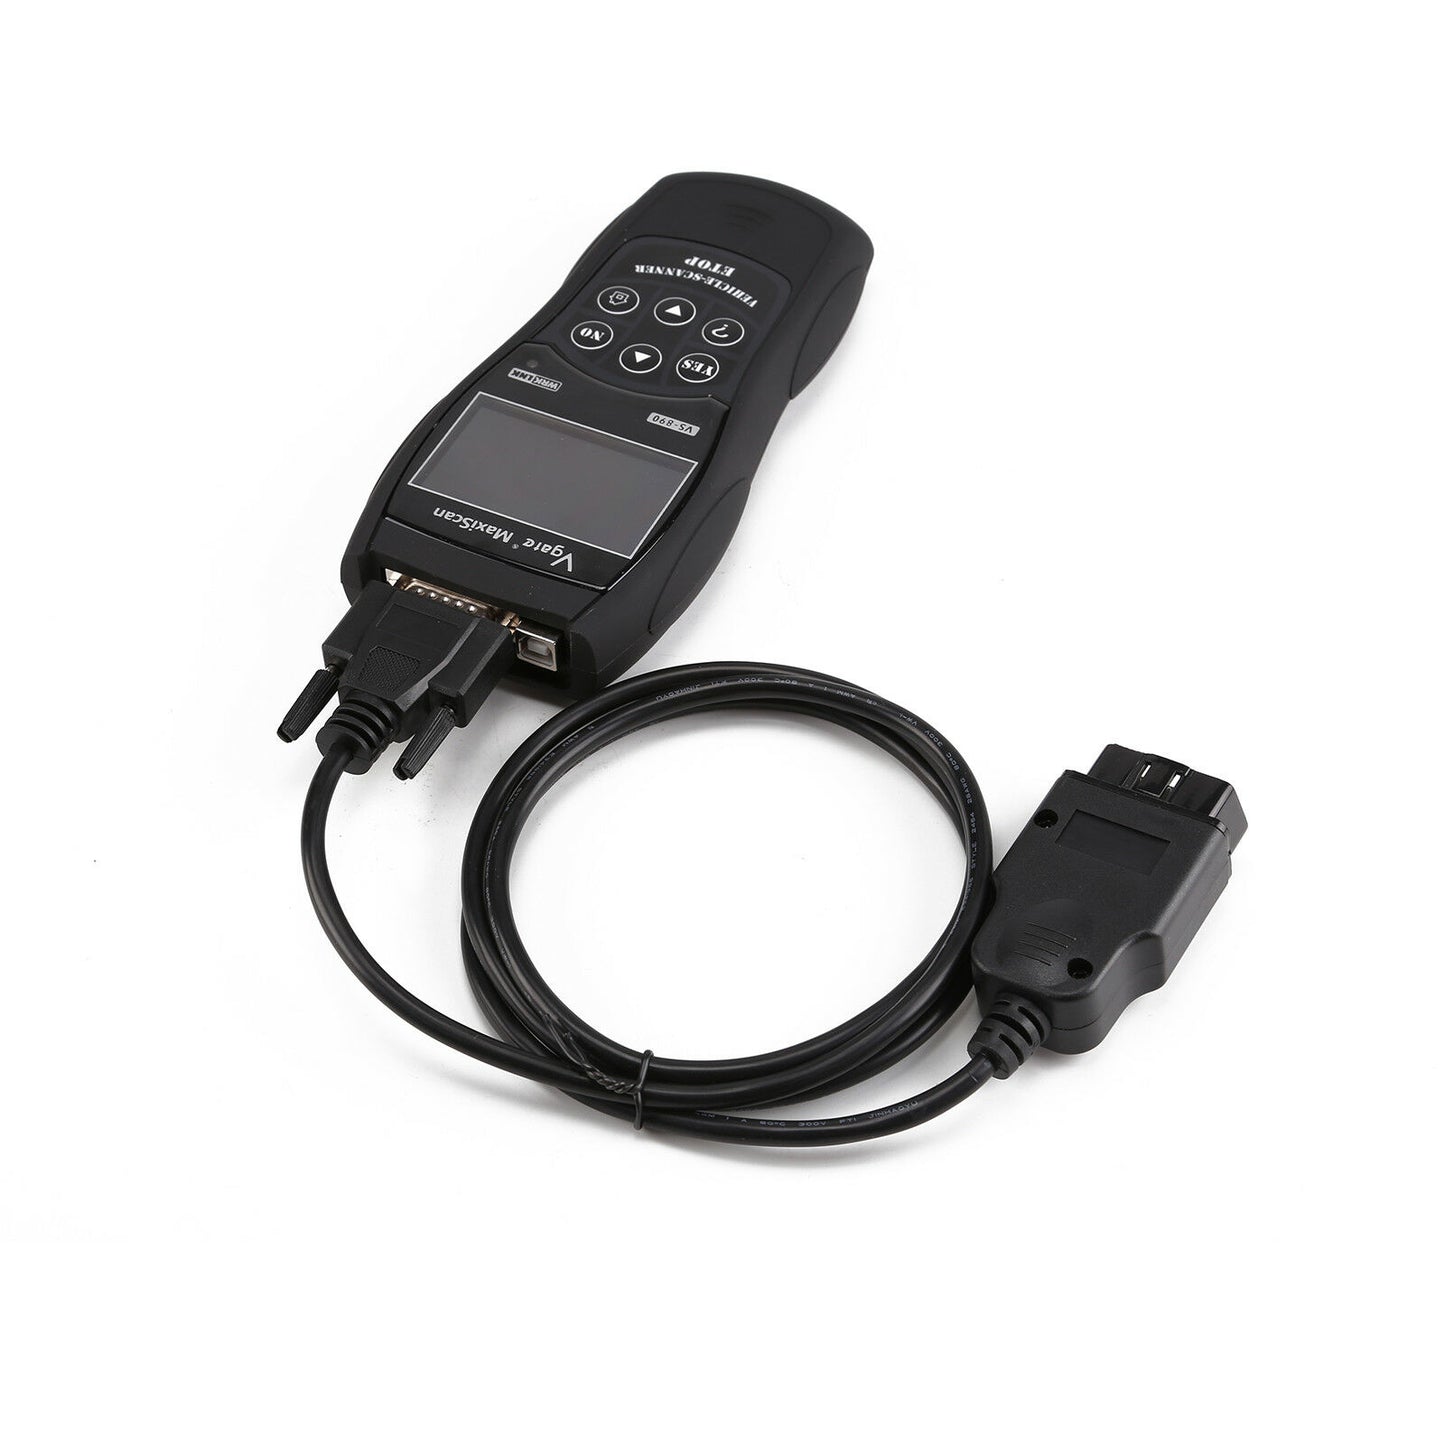 VGATE VS890 Diagnostic Tool OBD2 OBDII Fejlkodelæser-scanner til flere biler